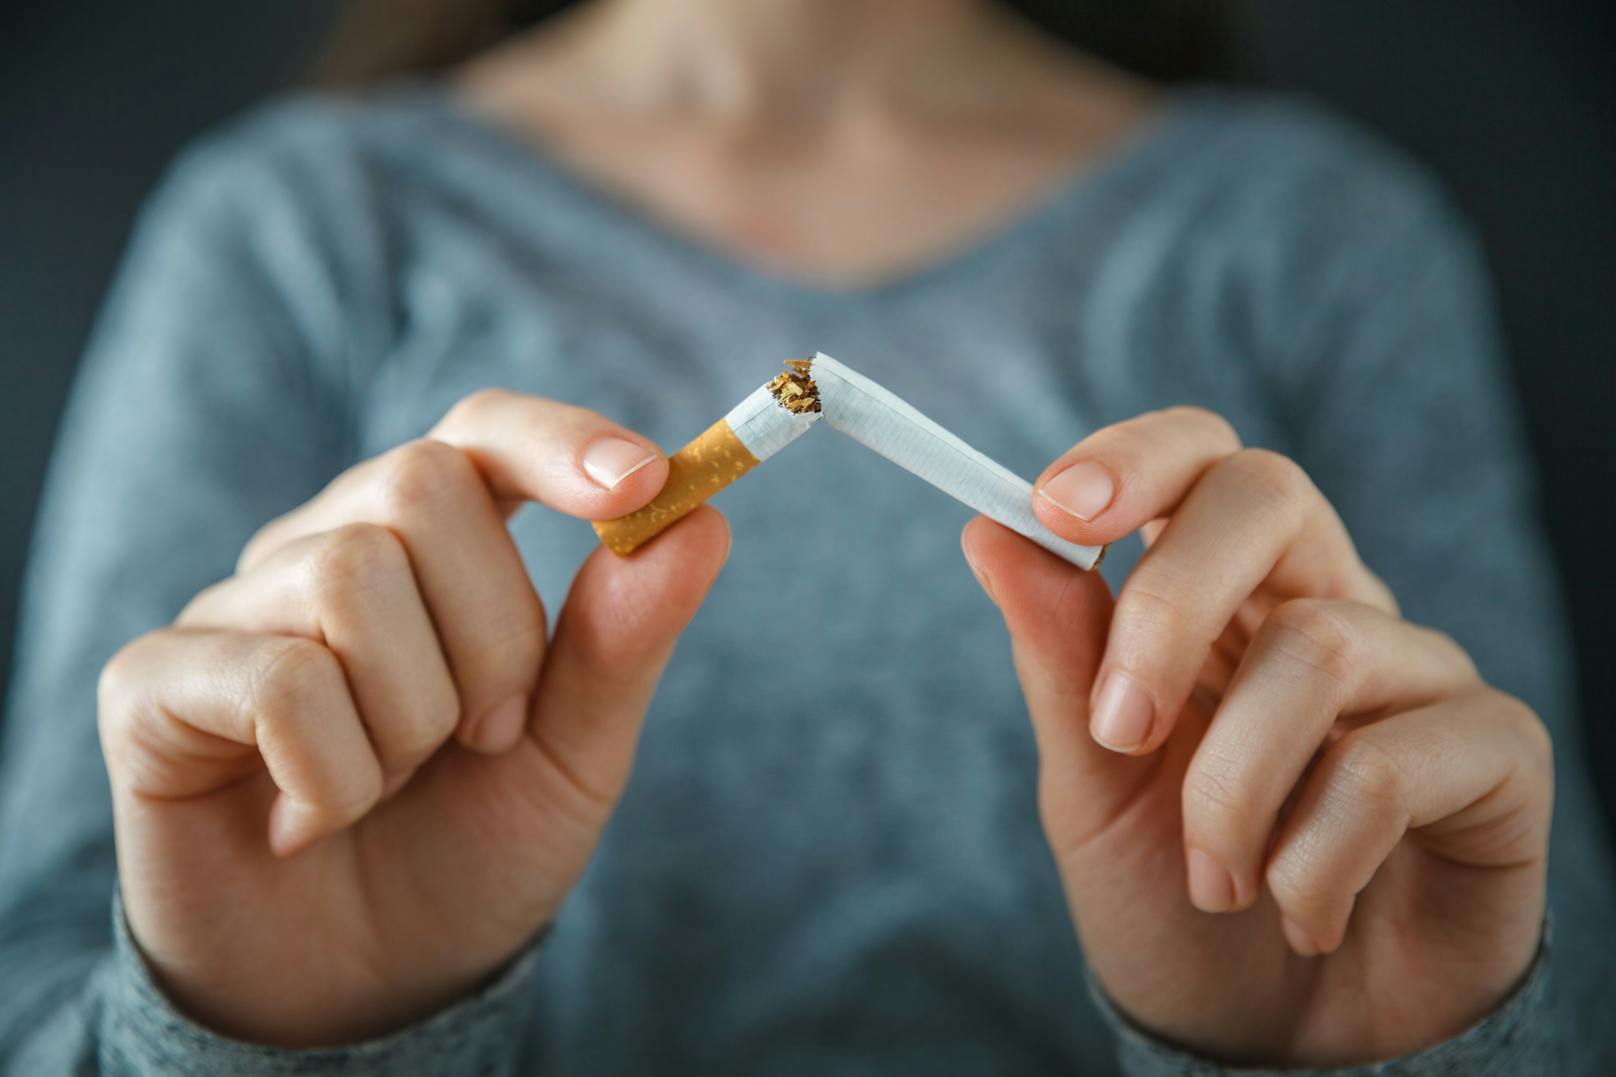 Das große Problem bei der Tabakentwöhnung ist nicht die körperliche, sondern die psychische Sucht.